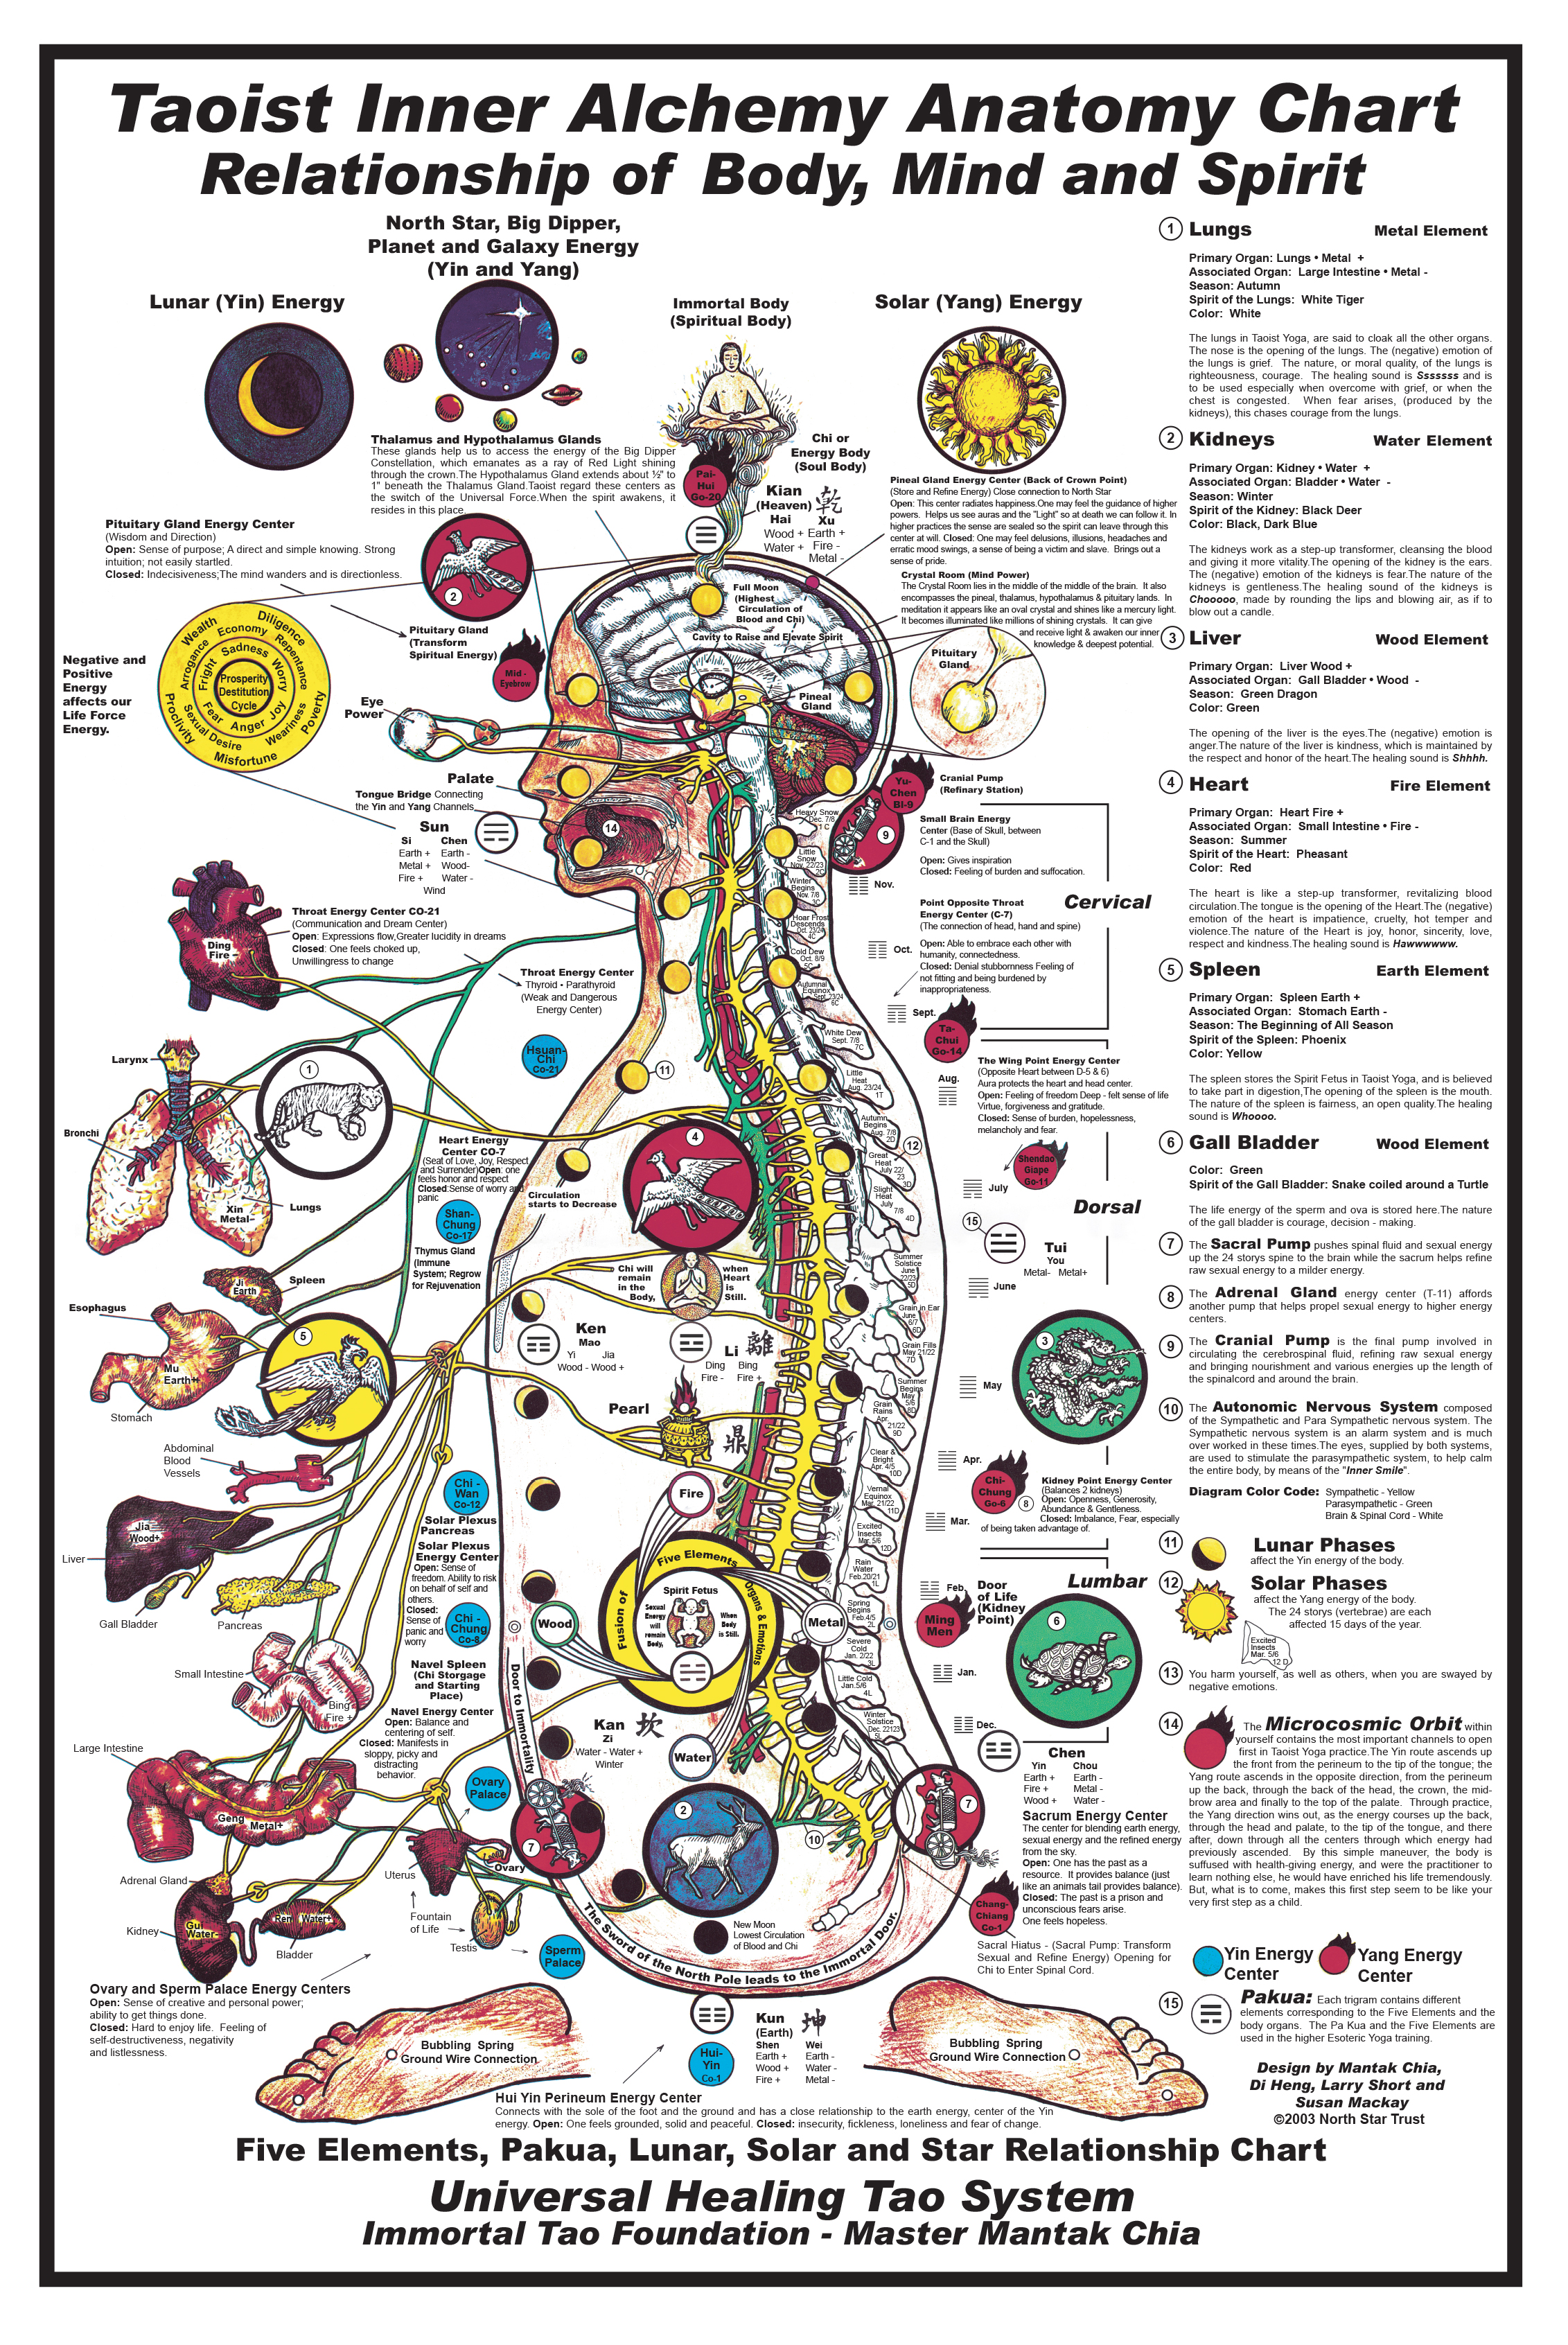 Universal Healing Tao Body Mind & Spirit Chart (E-Poster) [DL-P54]